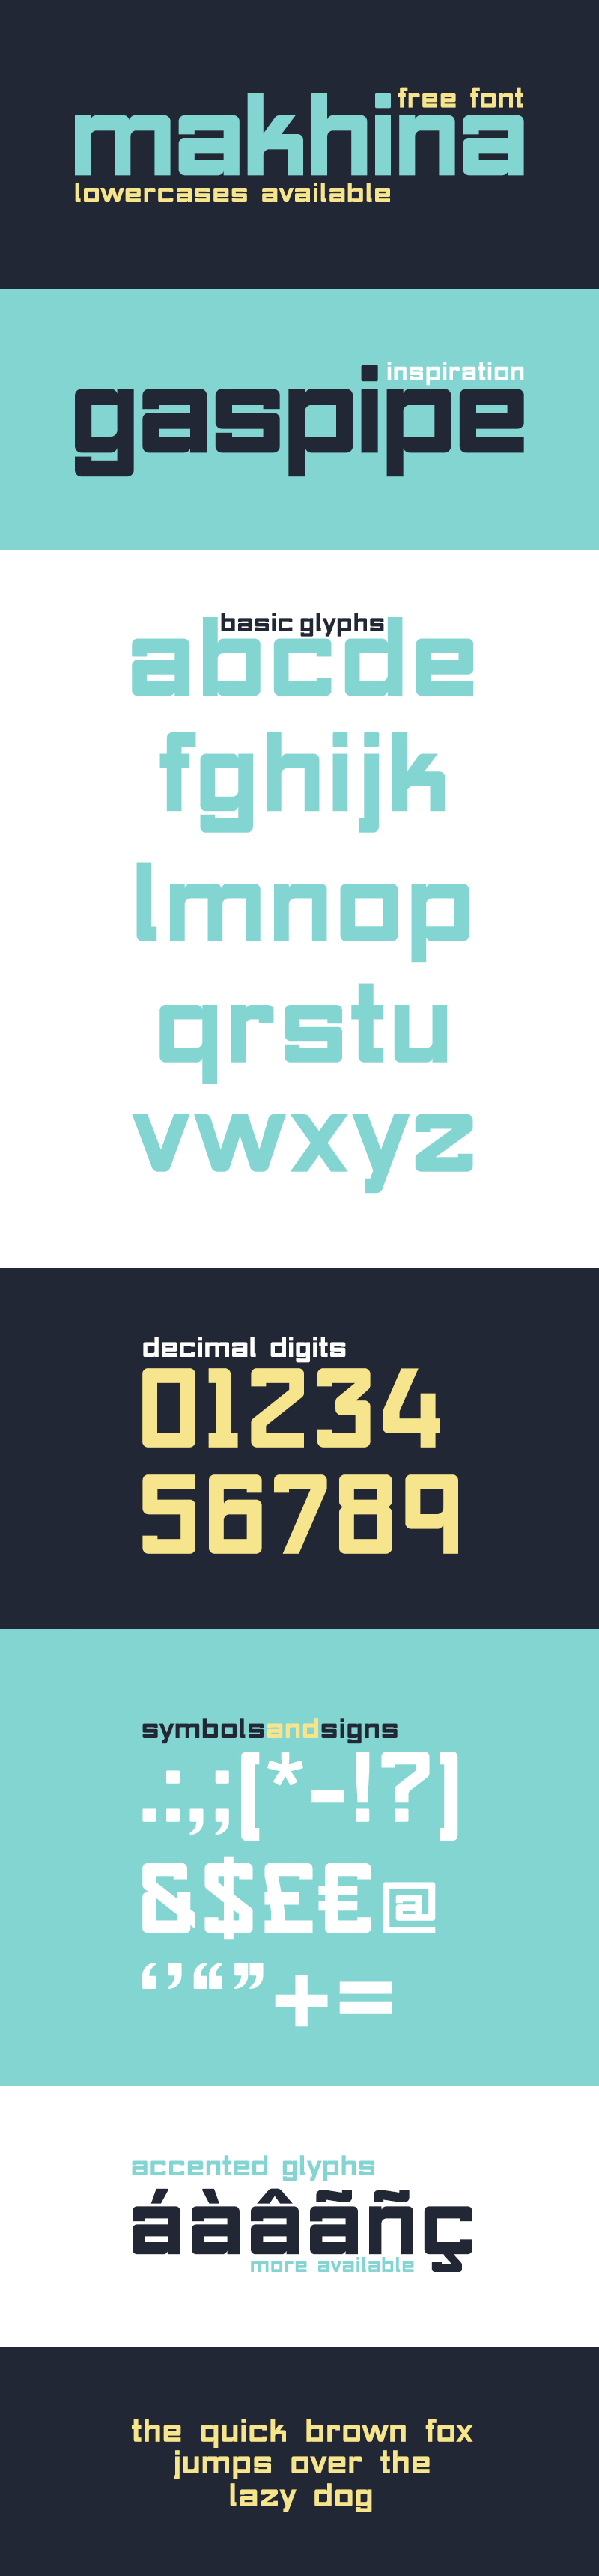 regular Makhina square font sans serif Typeface gas pipe glyphs type freebie free blocks Free font free download